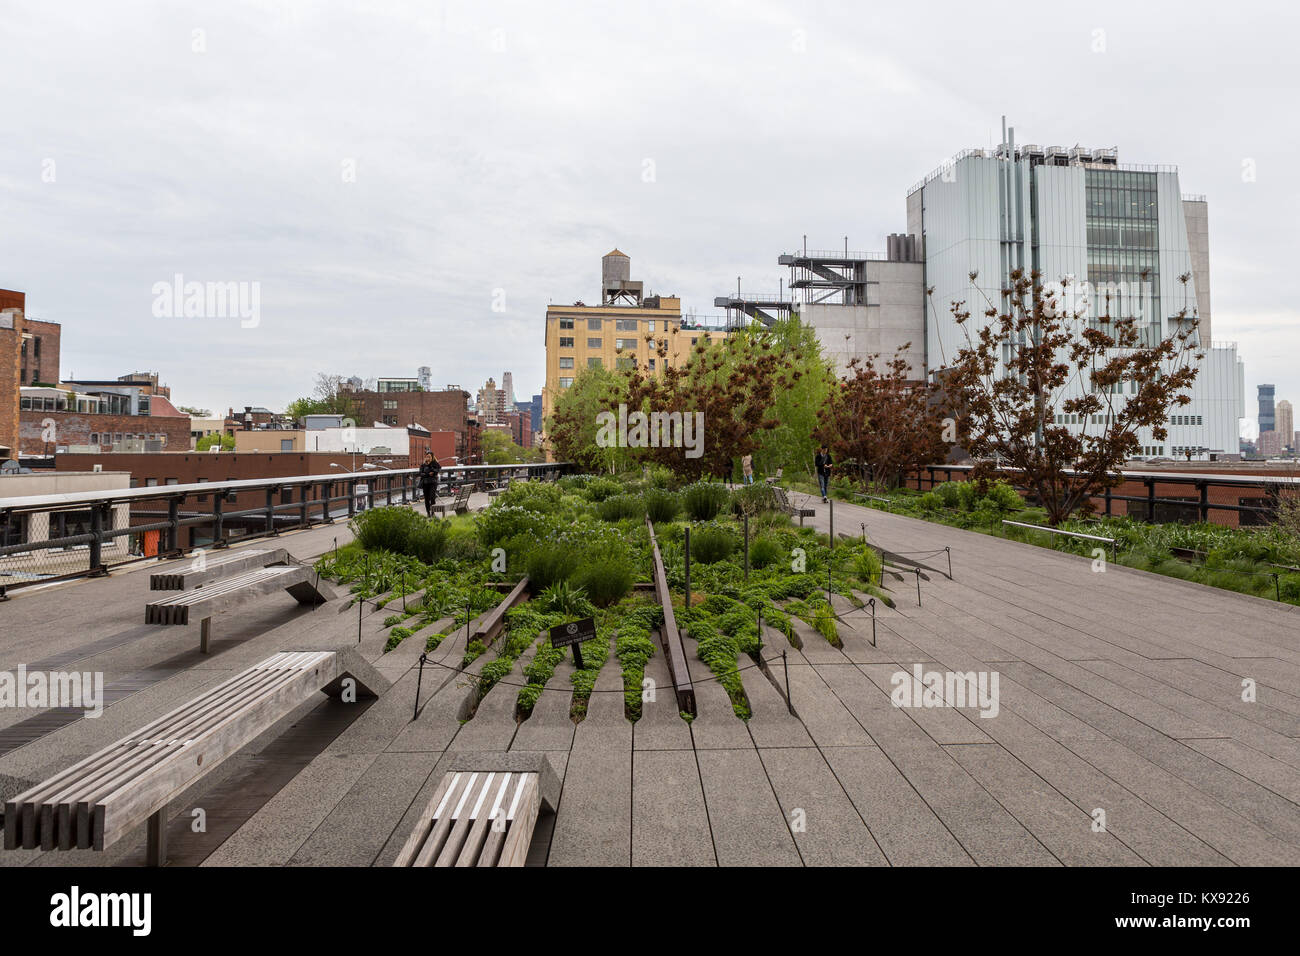 The High Line, NY Stock Photo